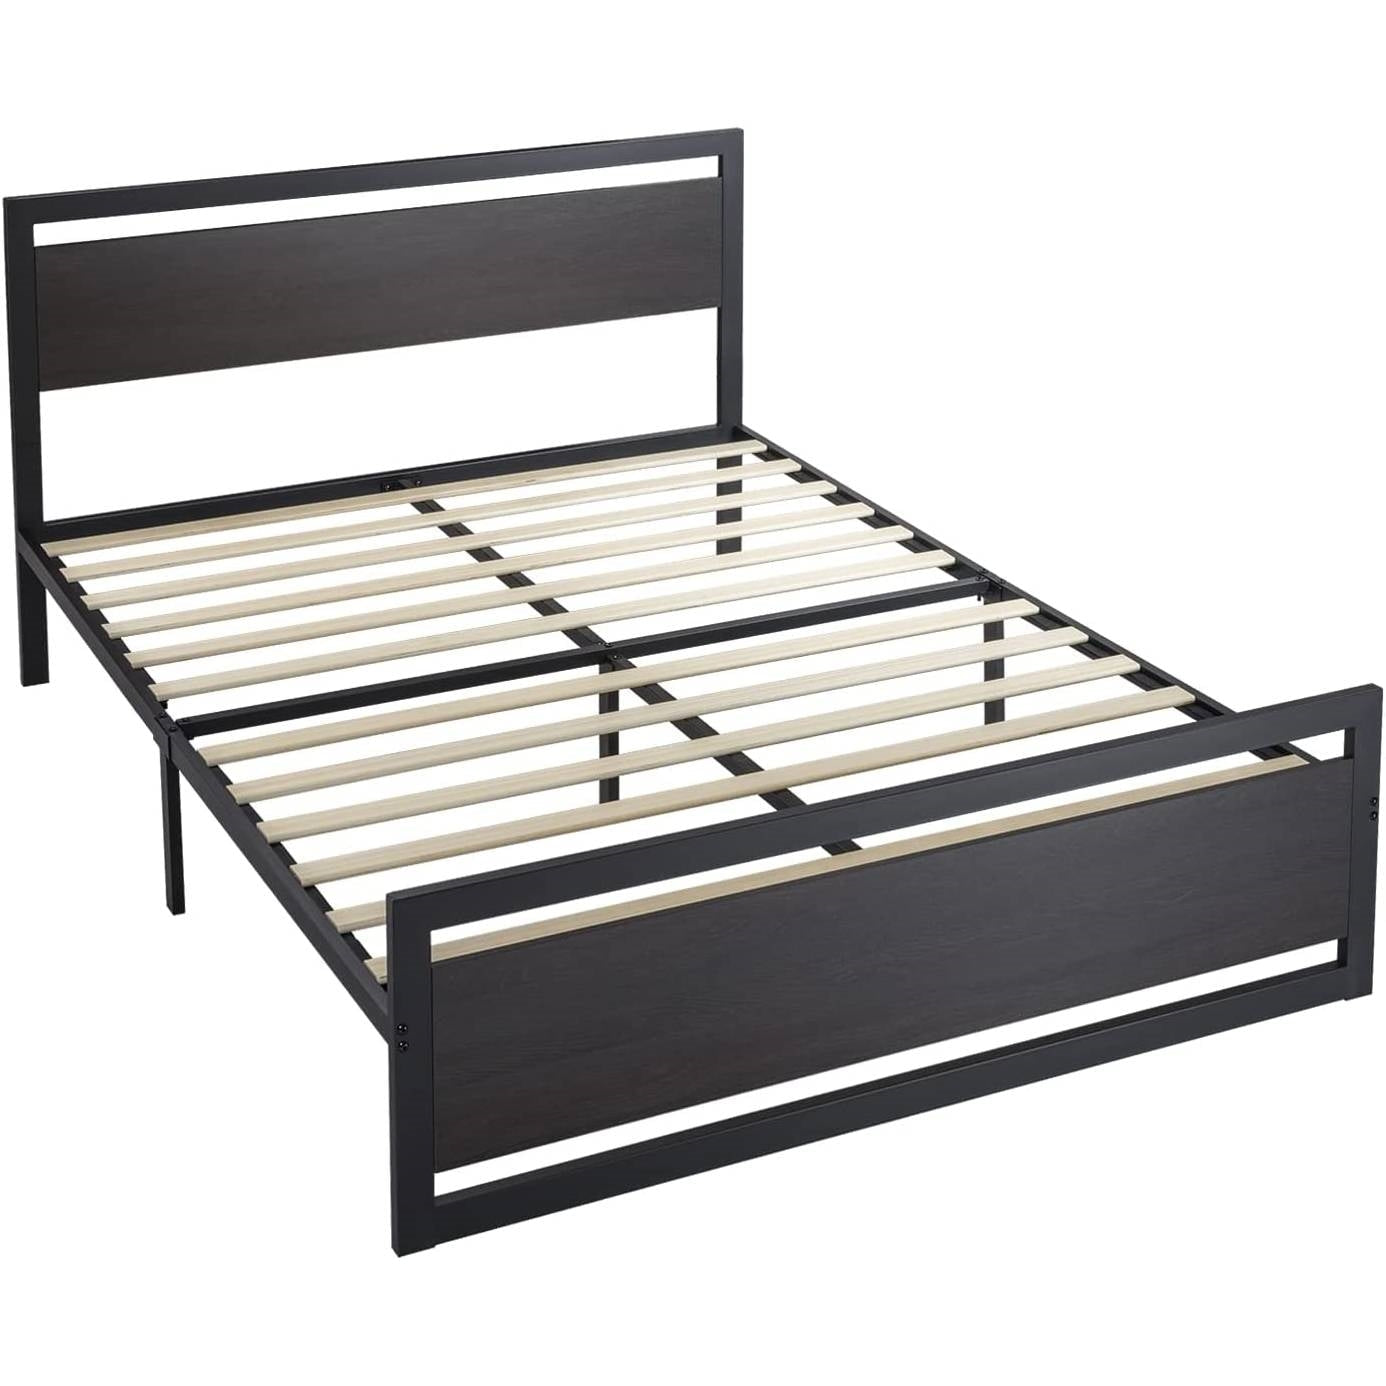 Bedroom > Bed Frames > Platform Beds - Full Black Metal Platform Bed Frame With Wood Panel Headboard And Footboard